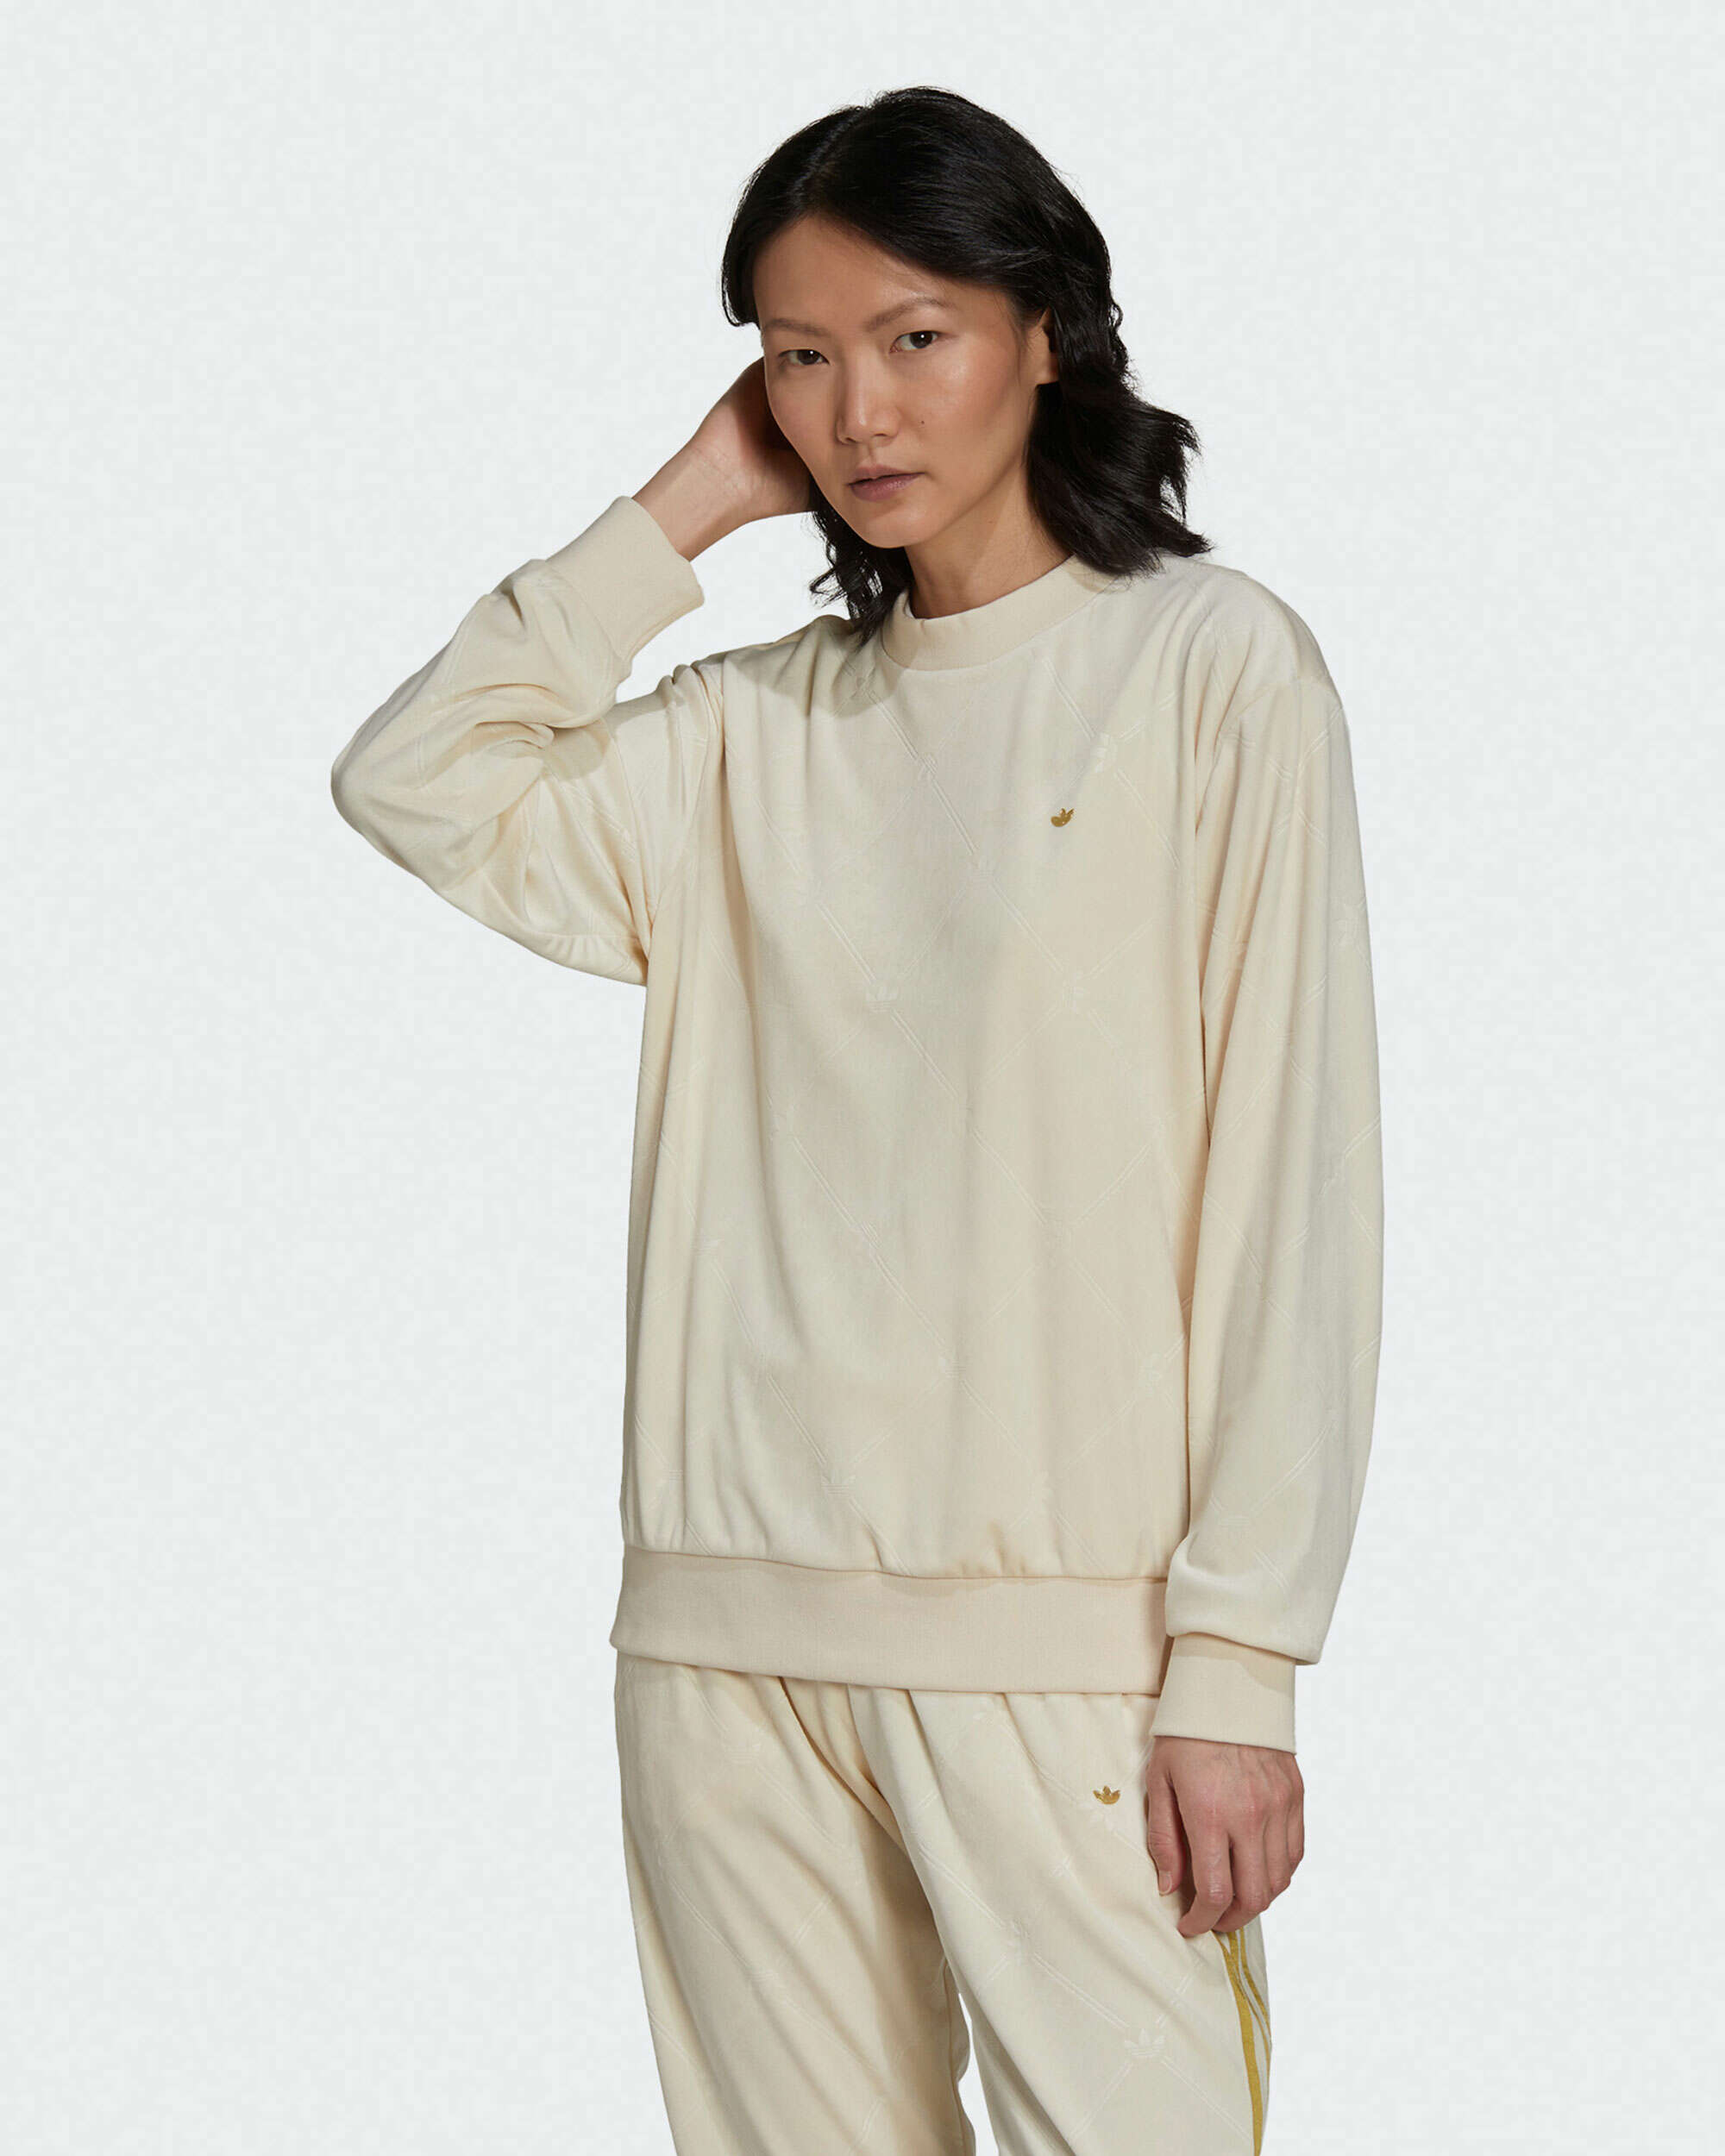 Online Beige Sweatshirt FOOTDISTRICT H18044| Velvet at adidas Women\'s Buy